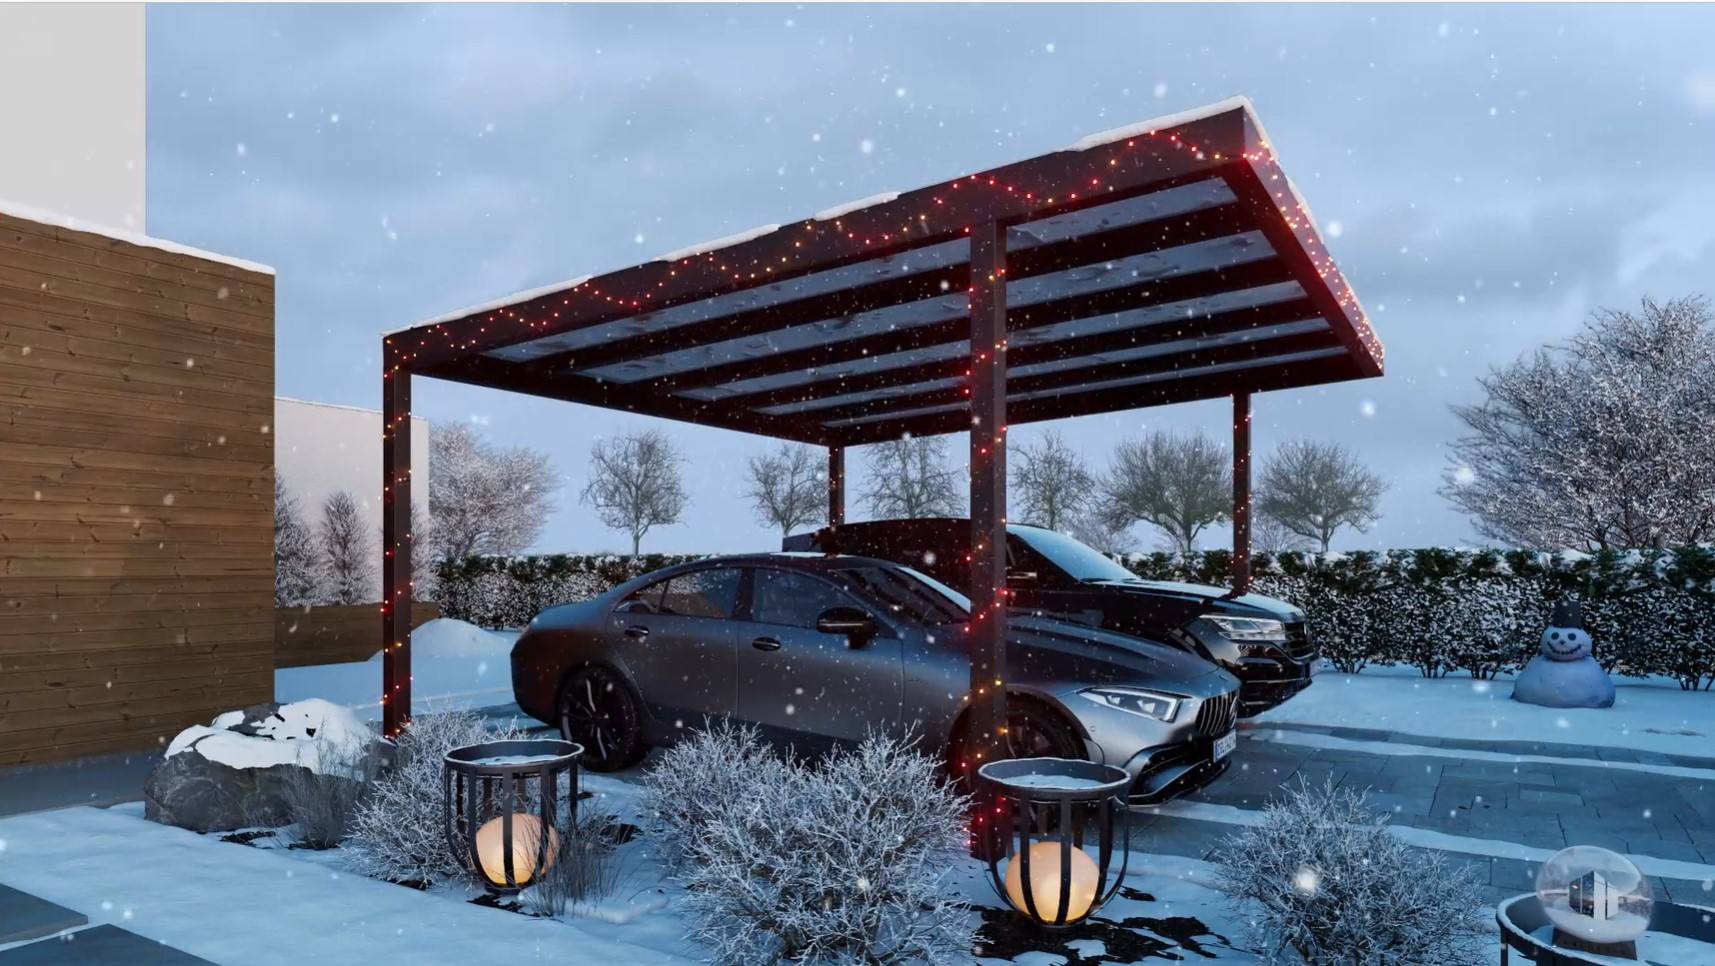 Abri voiture hiver, neige, lumières décoratives.